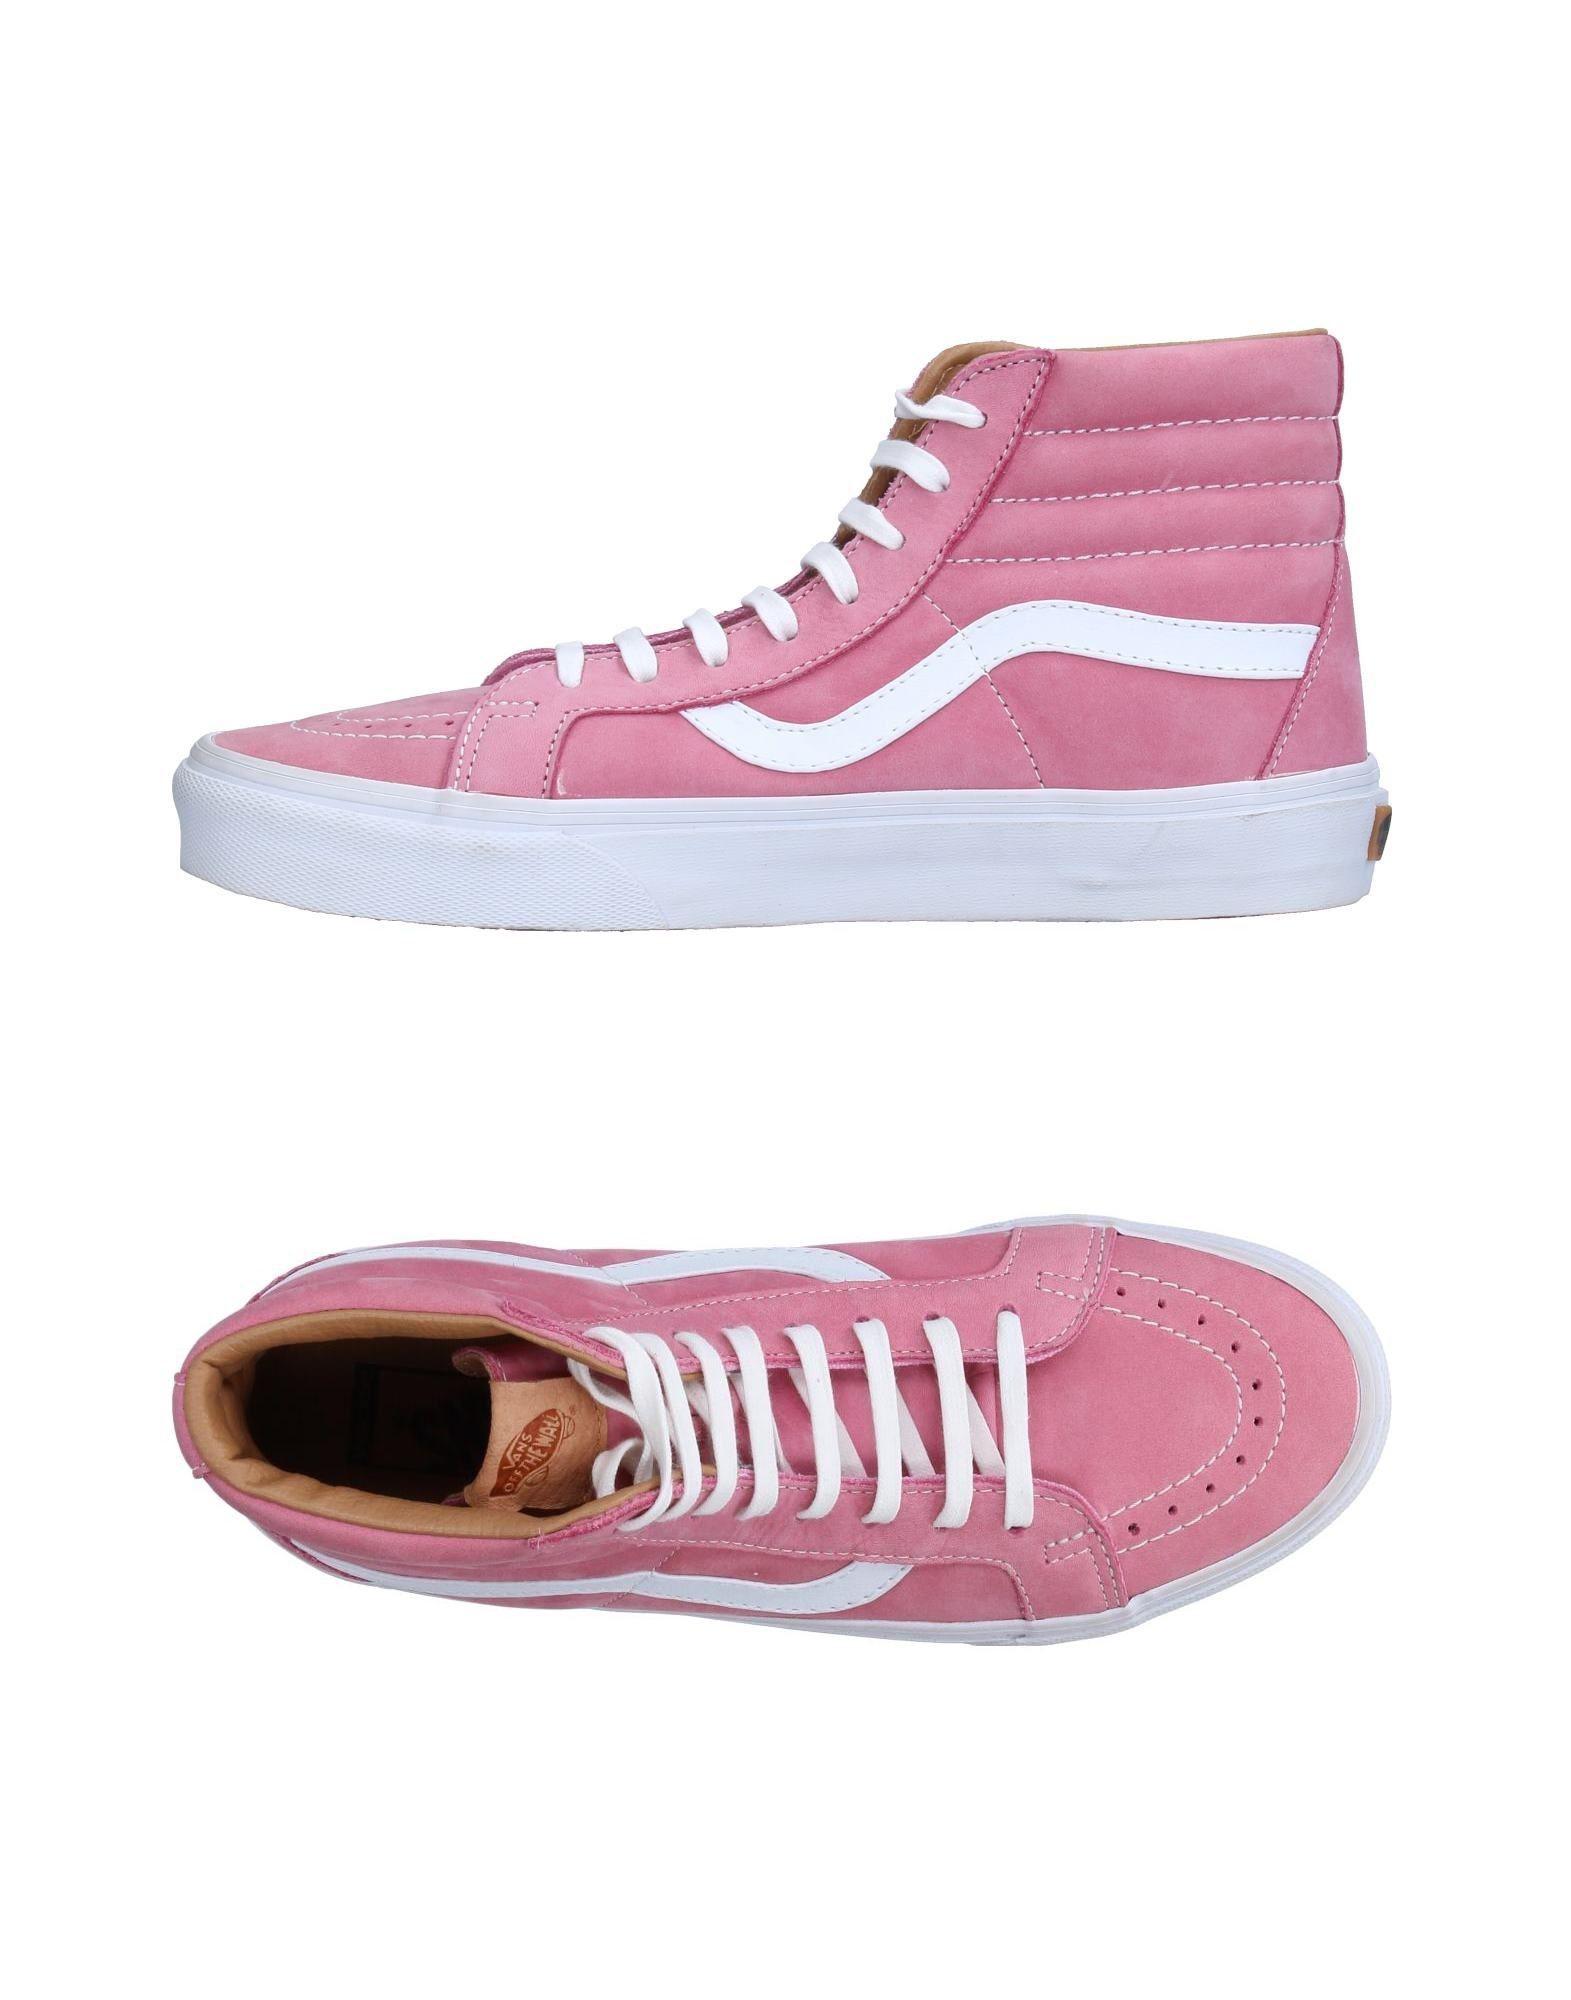 Lyst - Vans High-tops & Sneakers in Pink